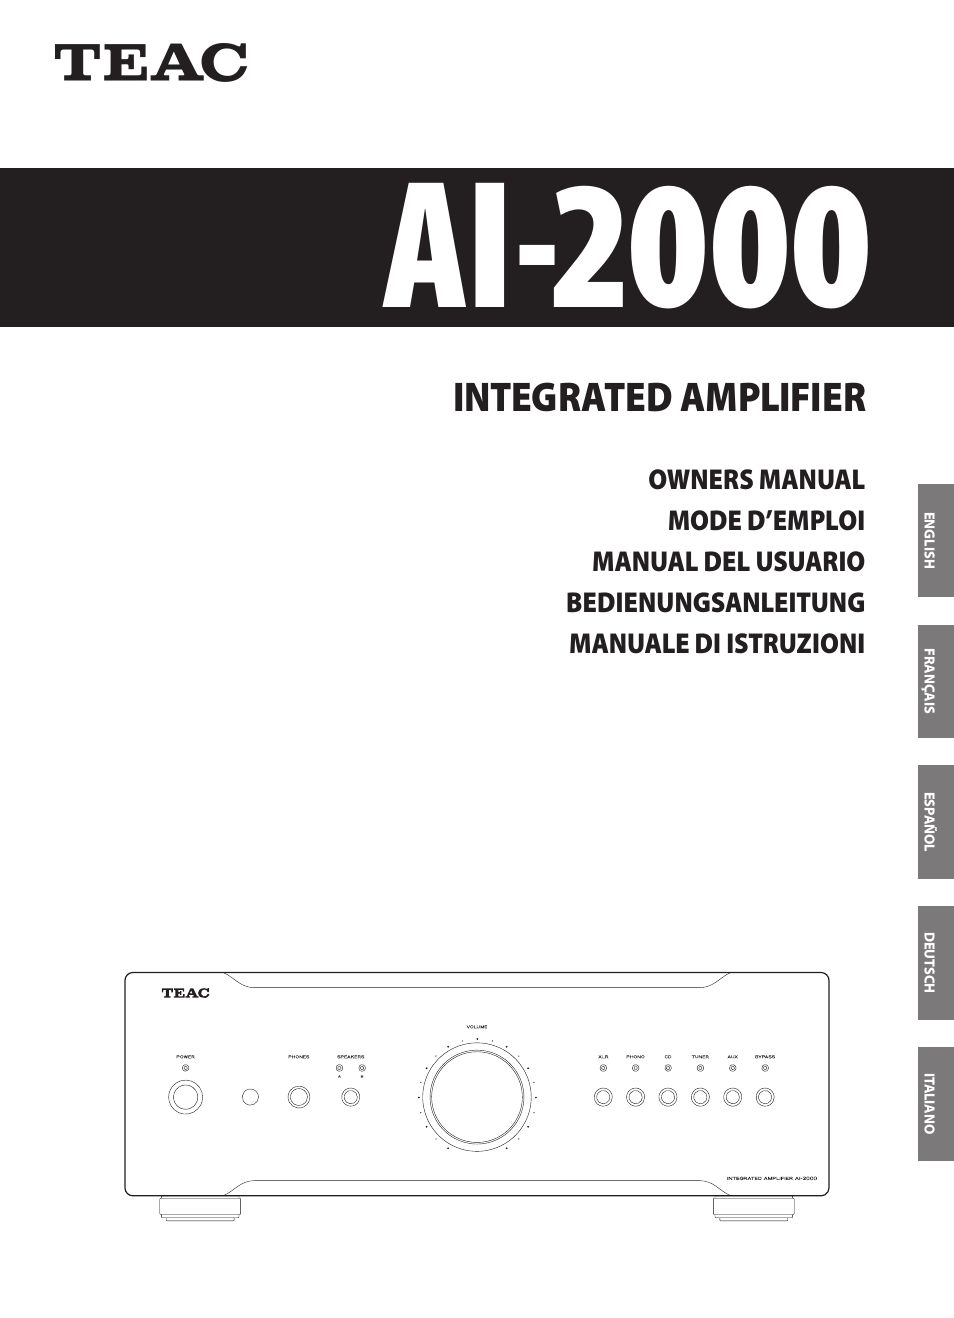 AI-2000